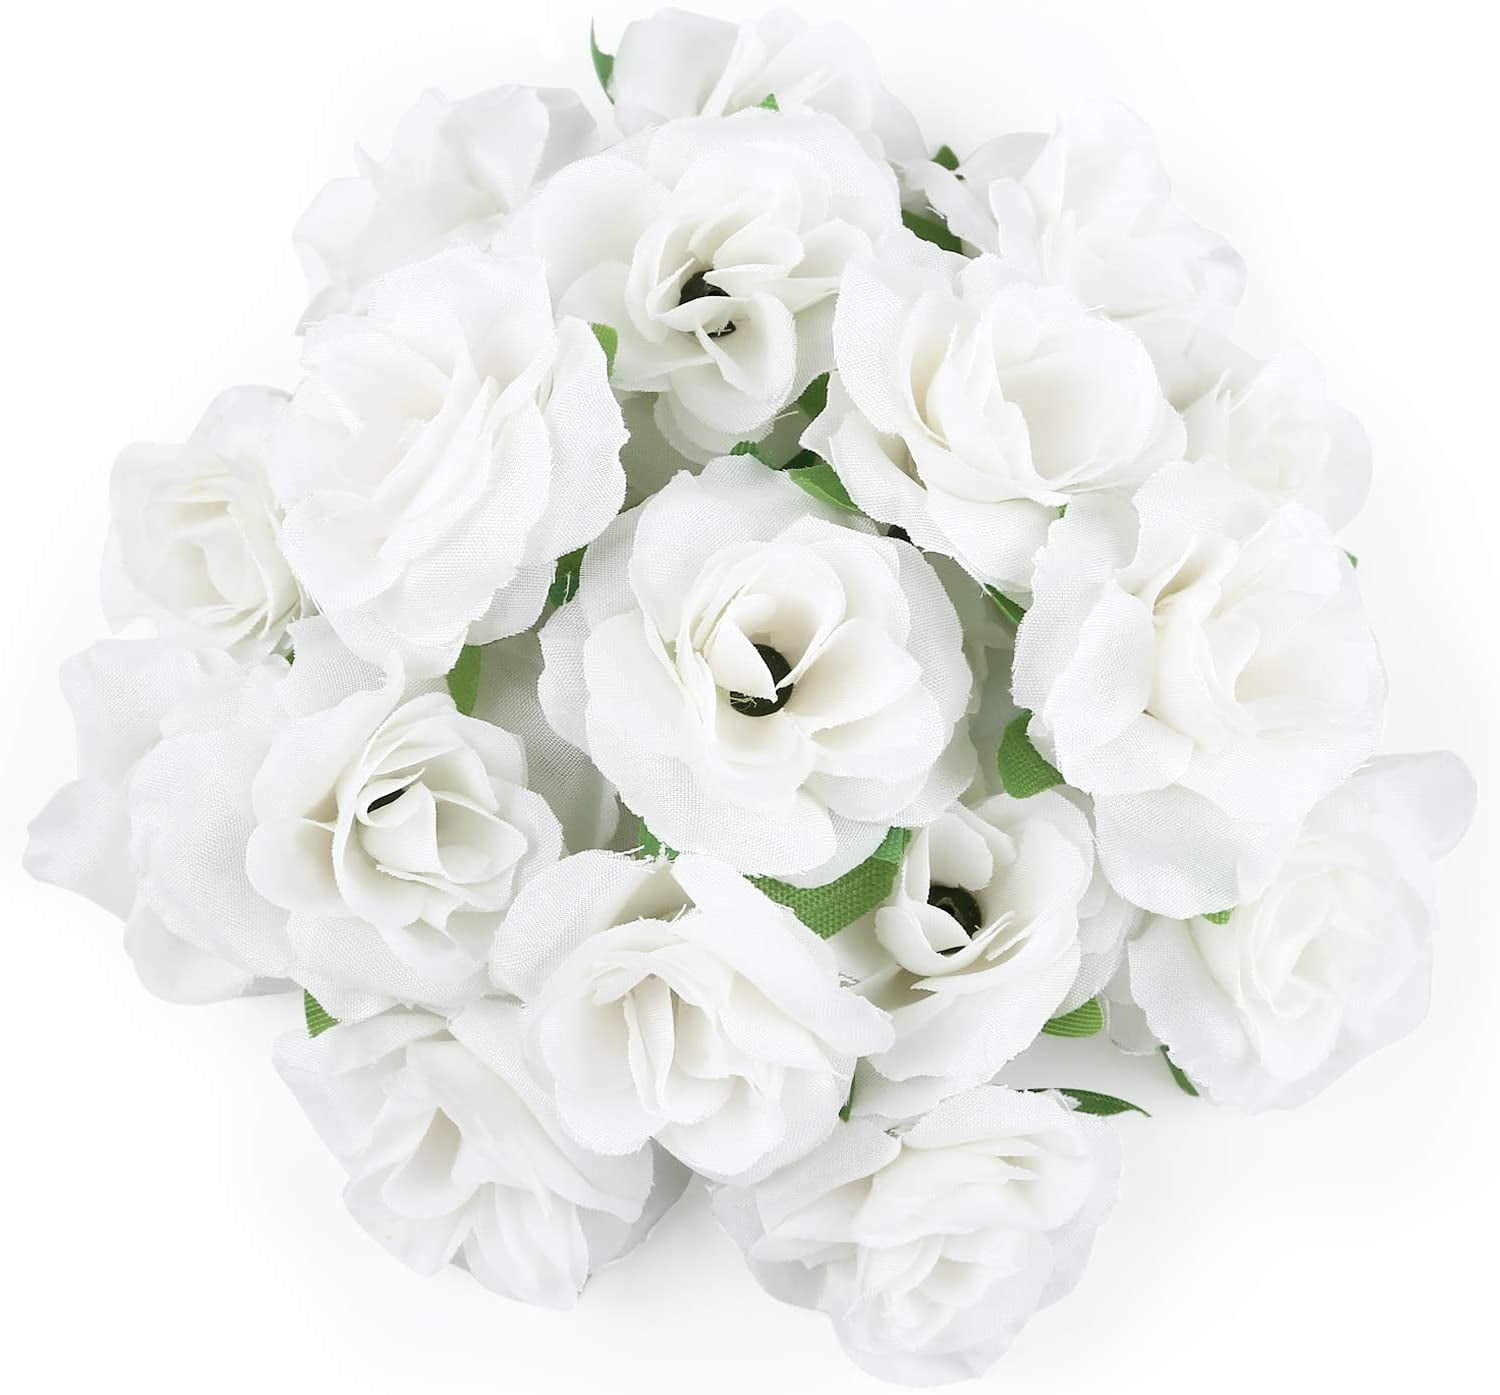  IPOPU White Roses Artificial Flowers 21.25 Long Stem Faux  White Roses Bulk Silk Flowers 5PCS 15Heads White Flowers Artificial for  Decoration for Dried Roses Bouquet Faux Floral Arrangements (White) : Home